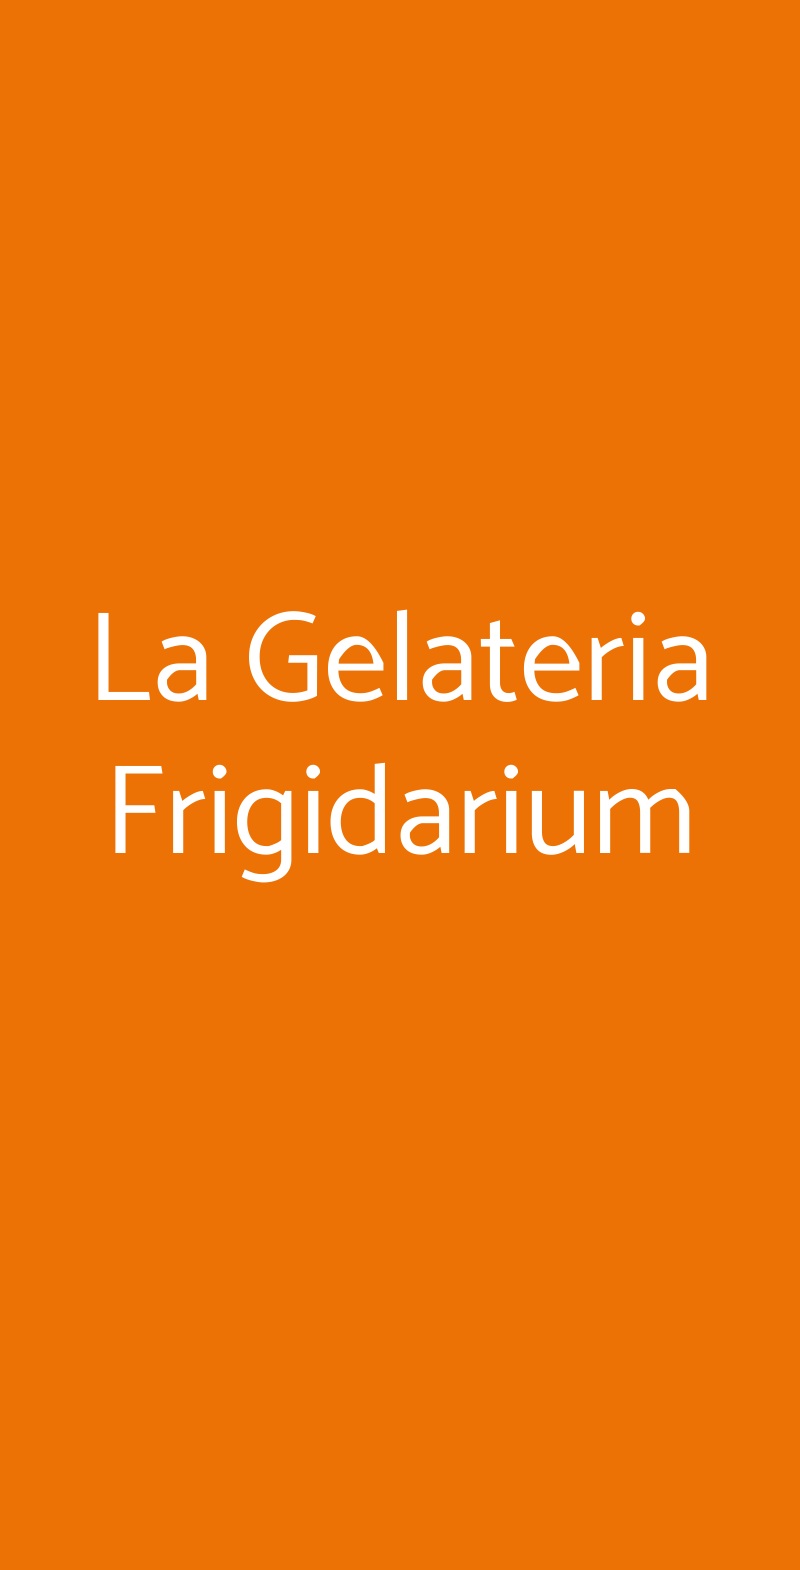 La Gelateria Frigidarium Roma menù 1 pagina